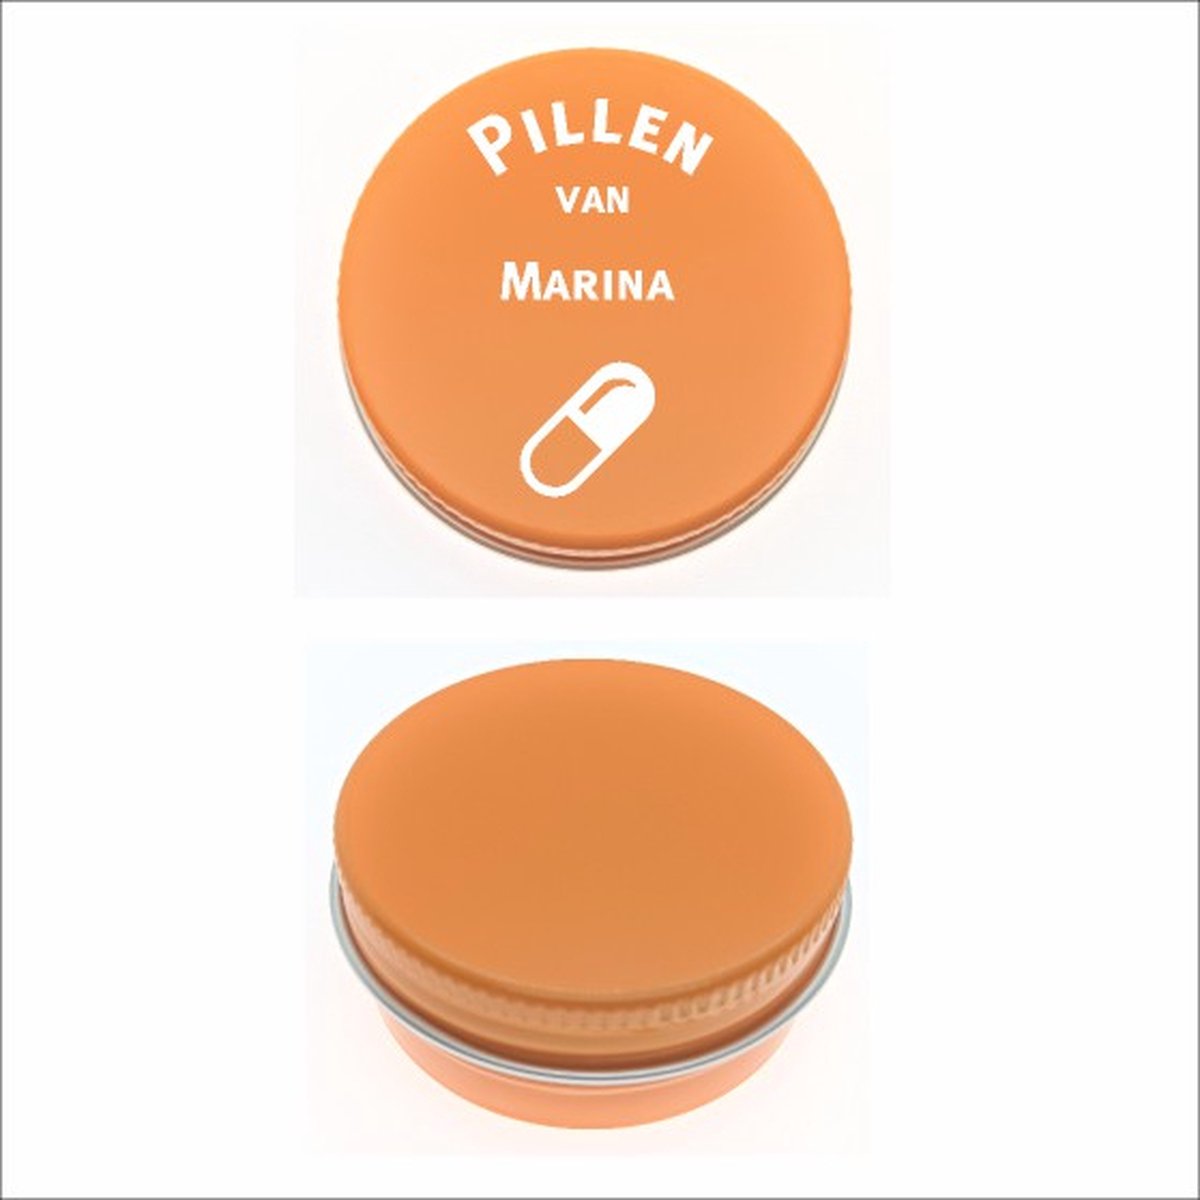 Pillen Blikje Met Naam Gravering - Marina